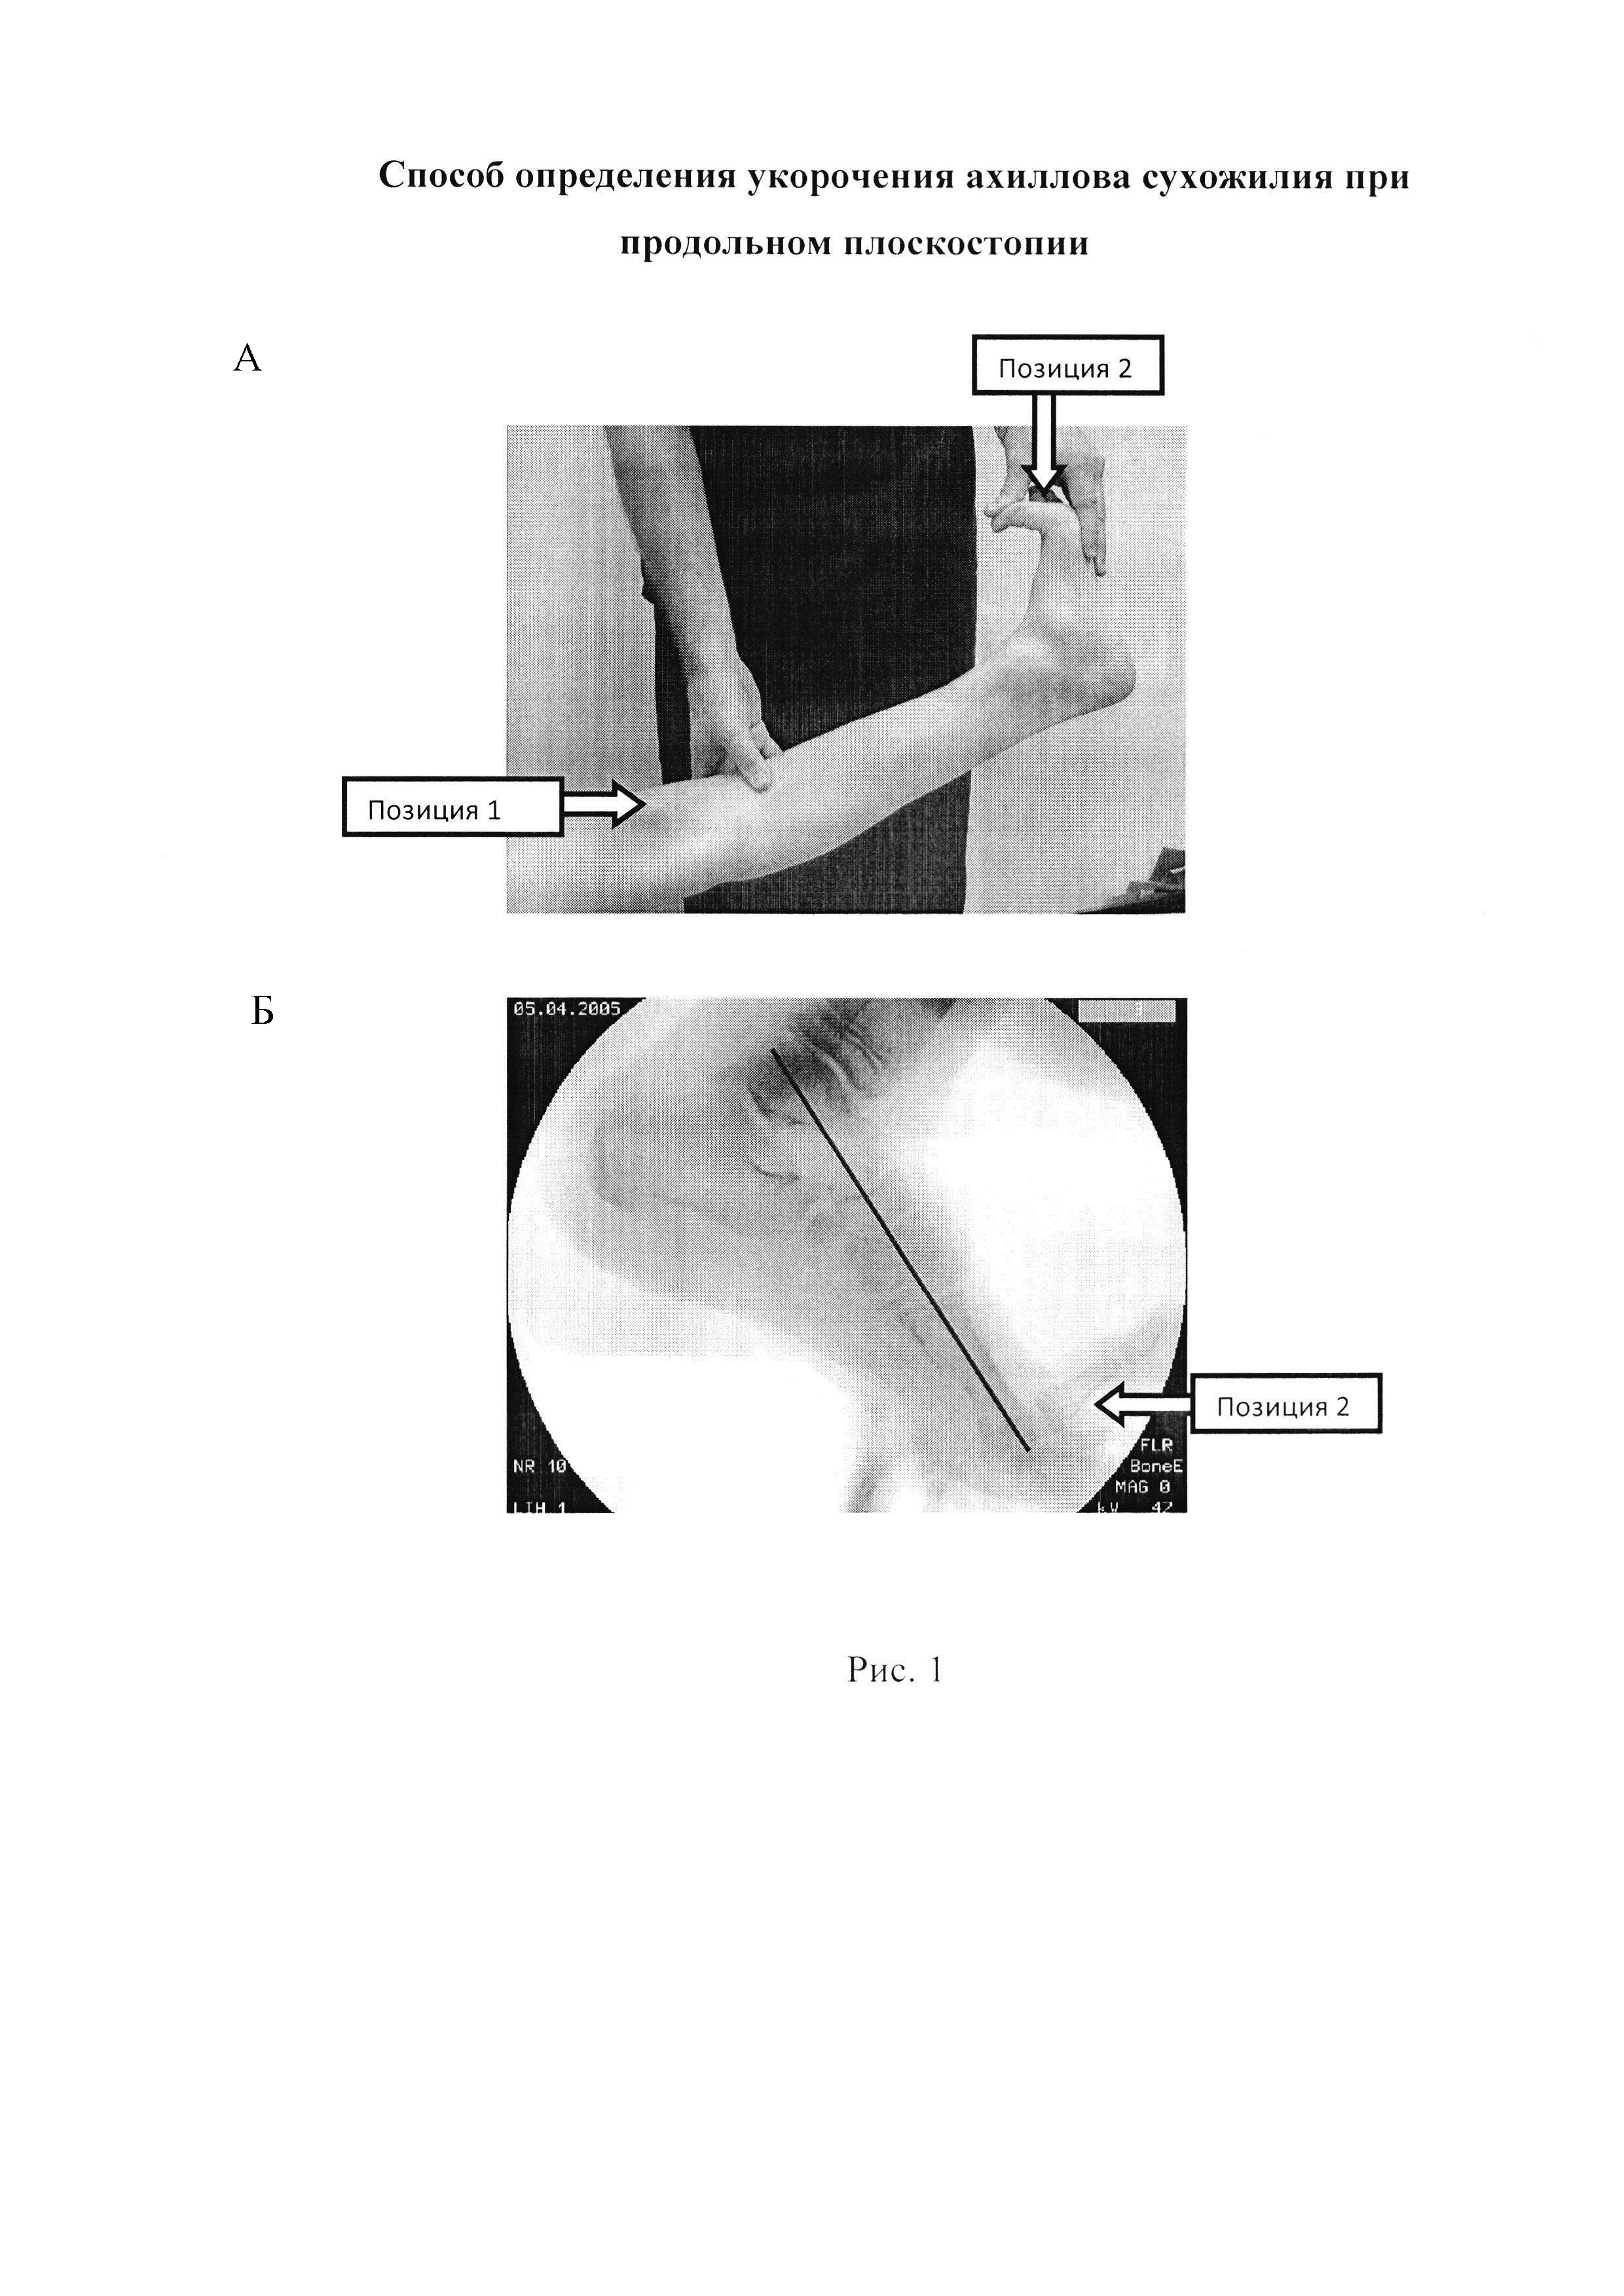 Способ определения укорочения ахиллова сухожилия при продольном плоскостопии